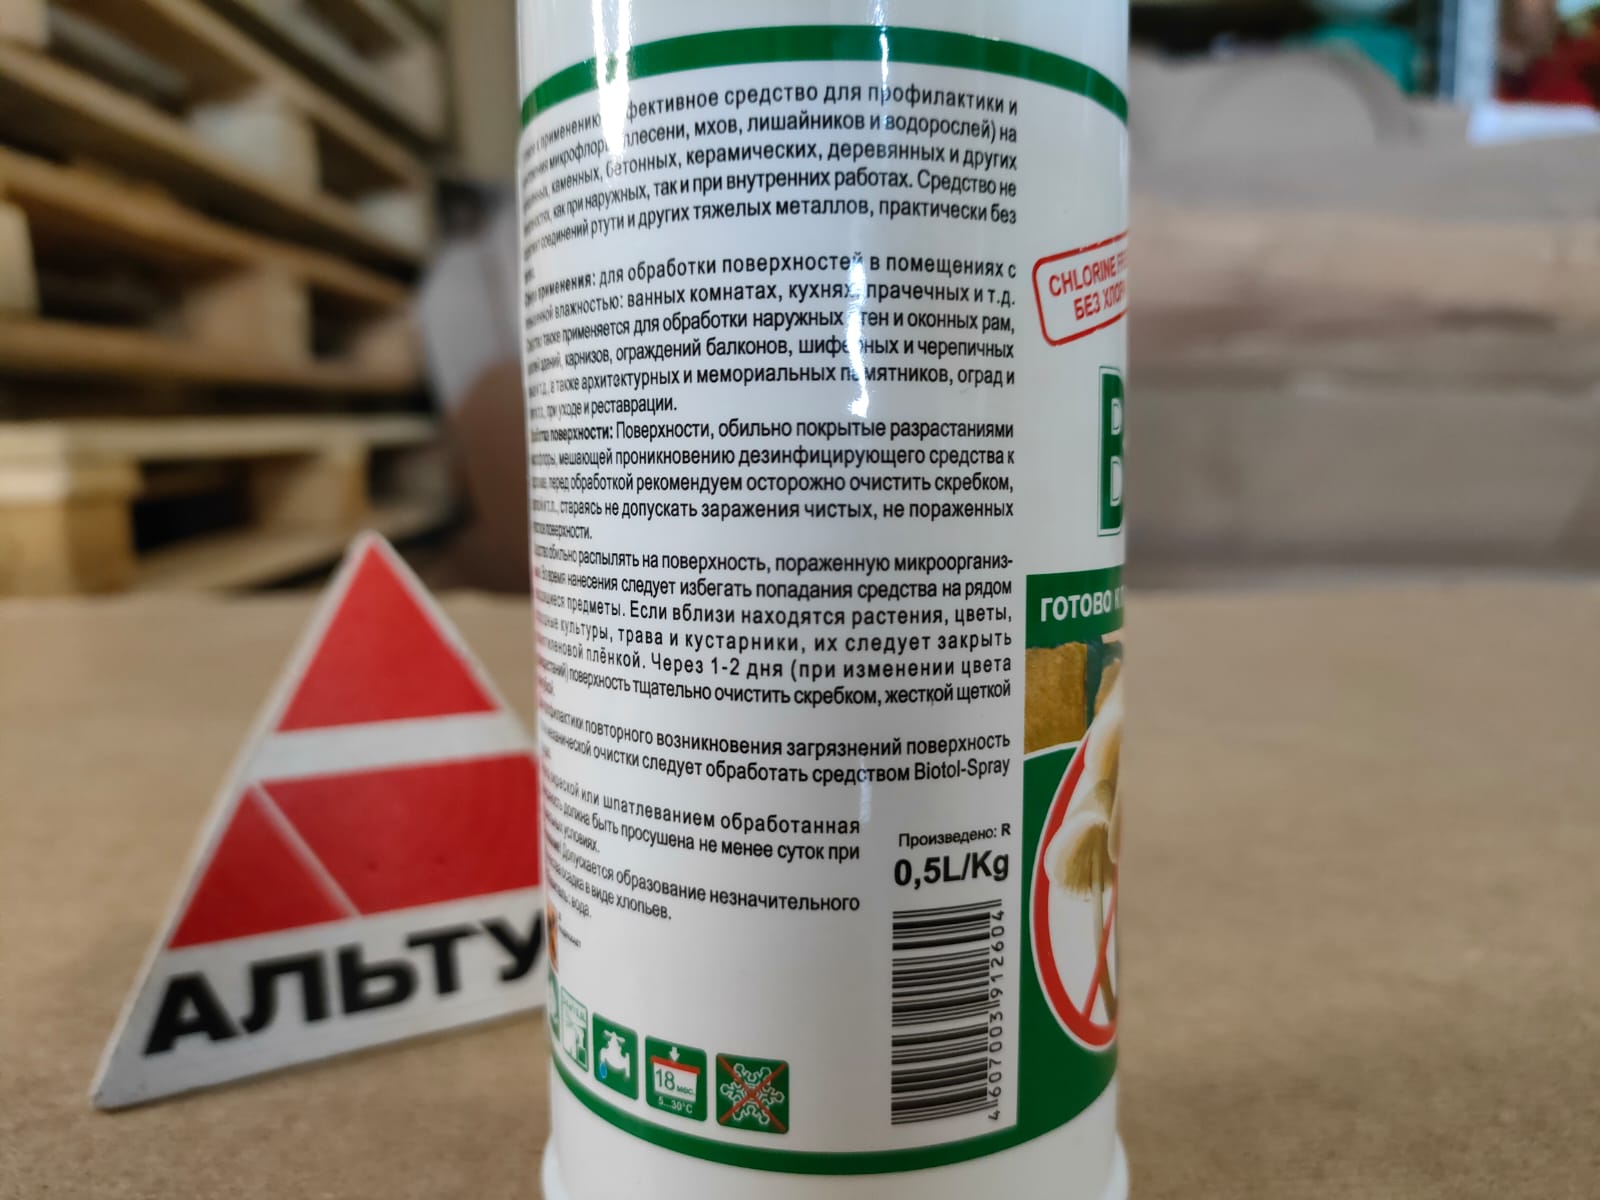 Дезинфицирующее средство против плесени, мхов, лишайников и водорослей 0,5 л Eskaro Biotol Spray								